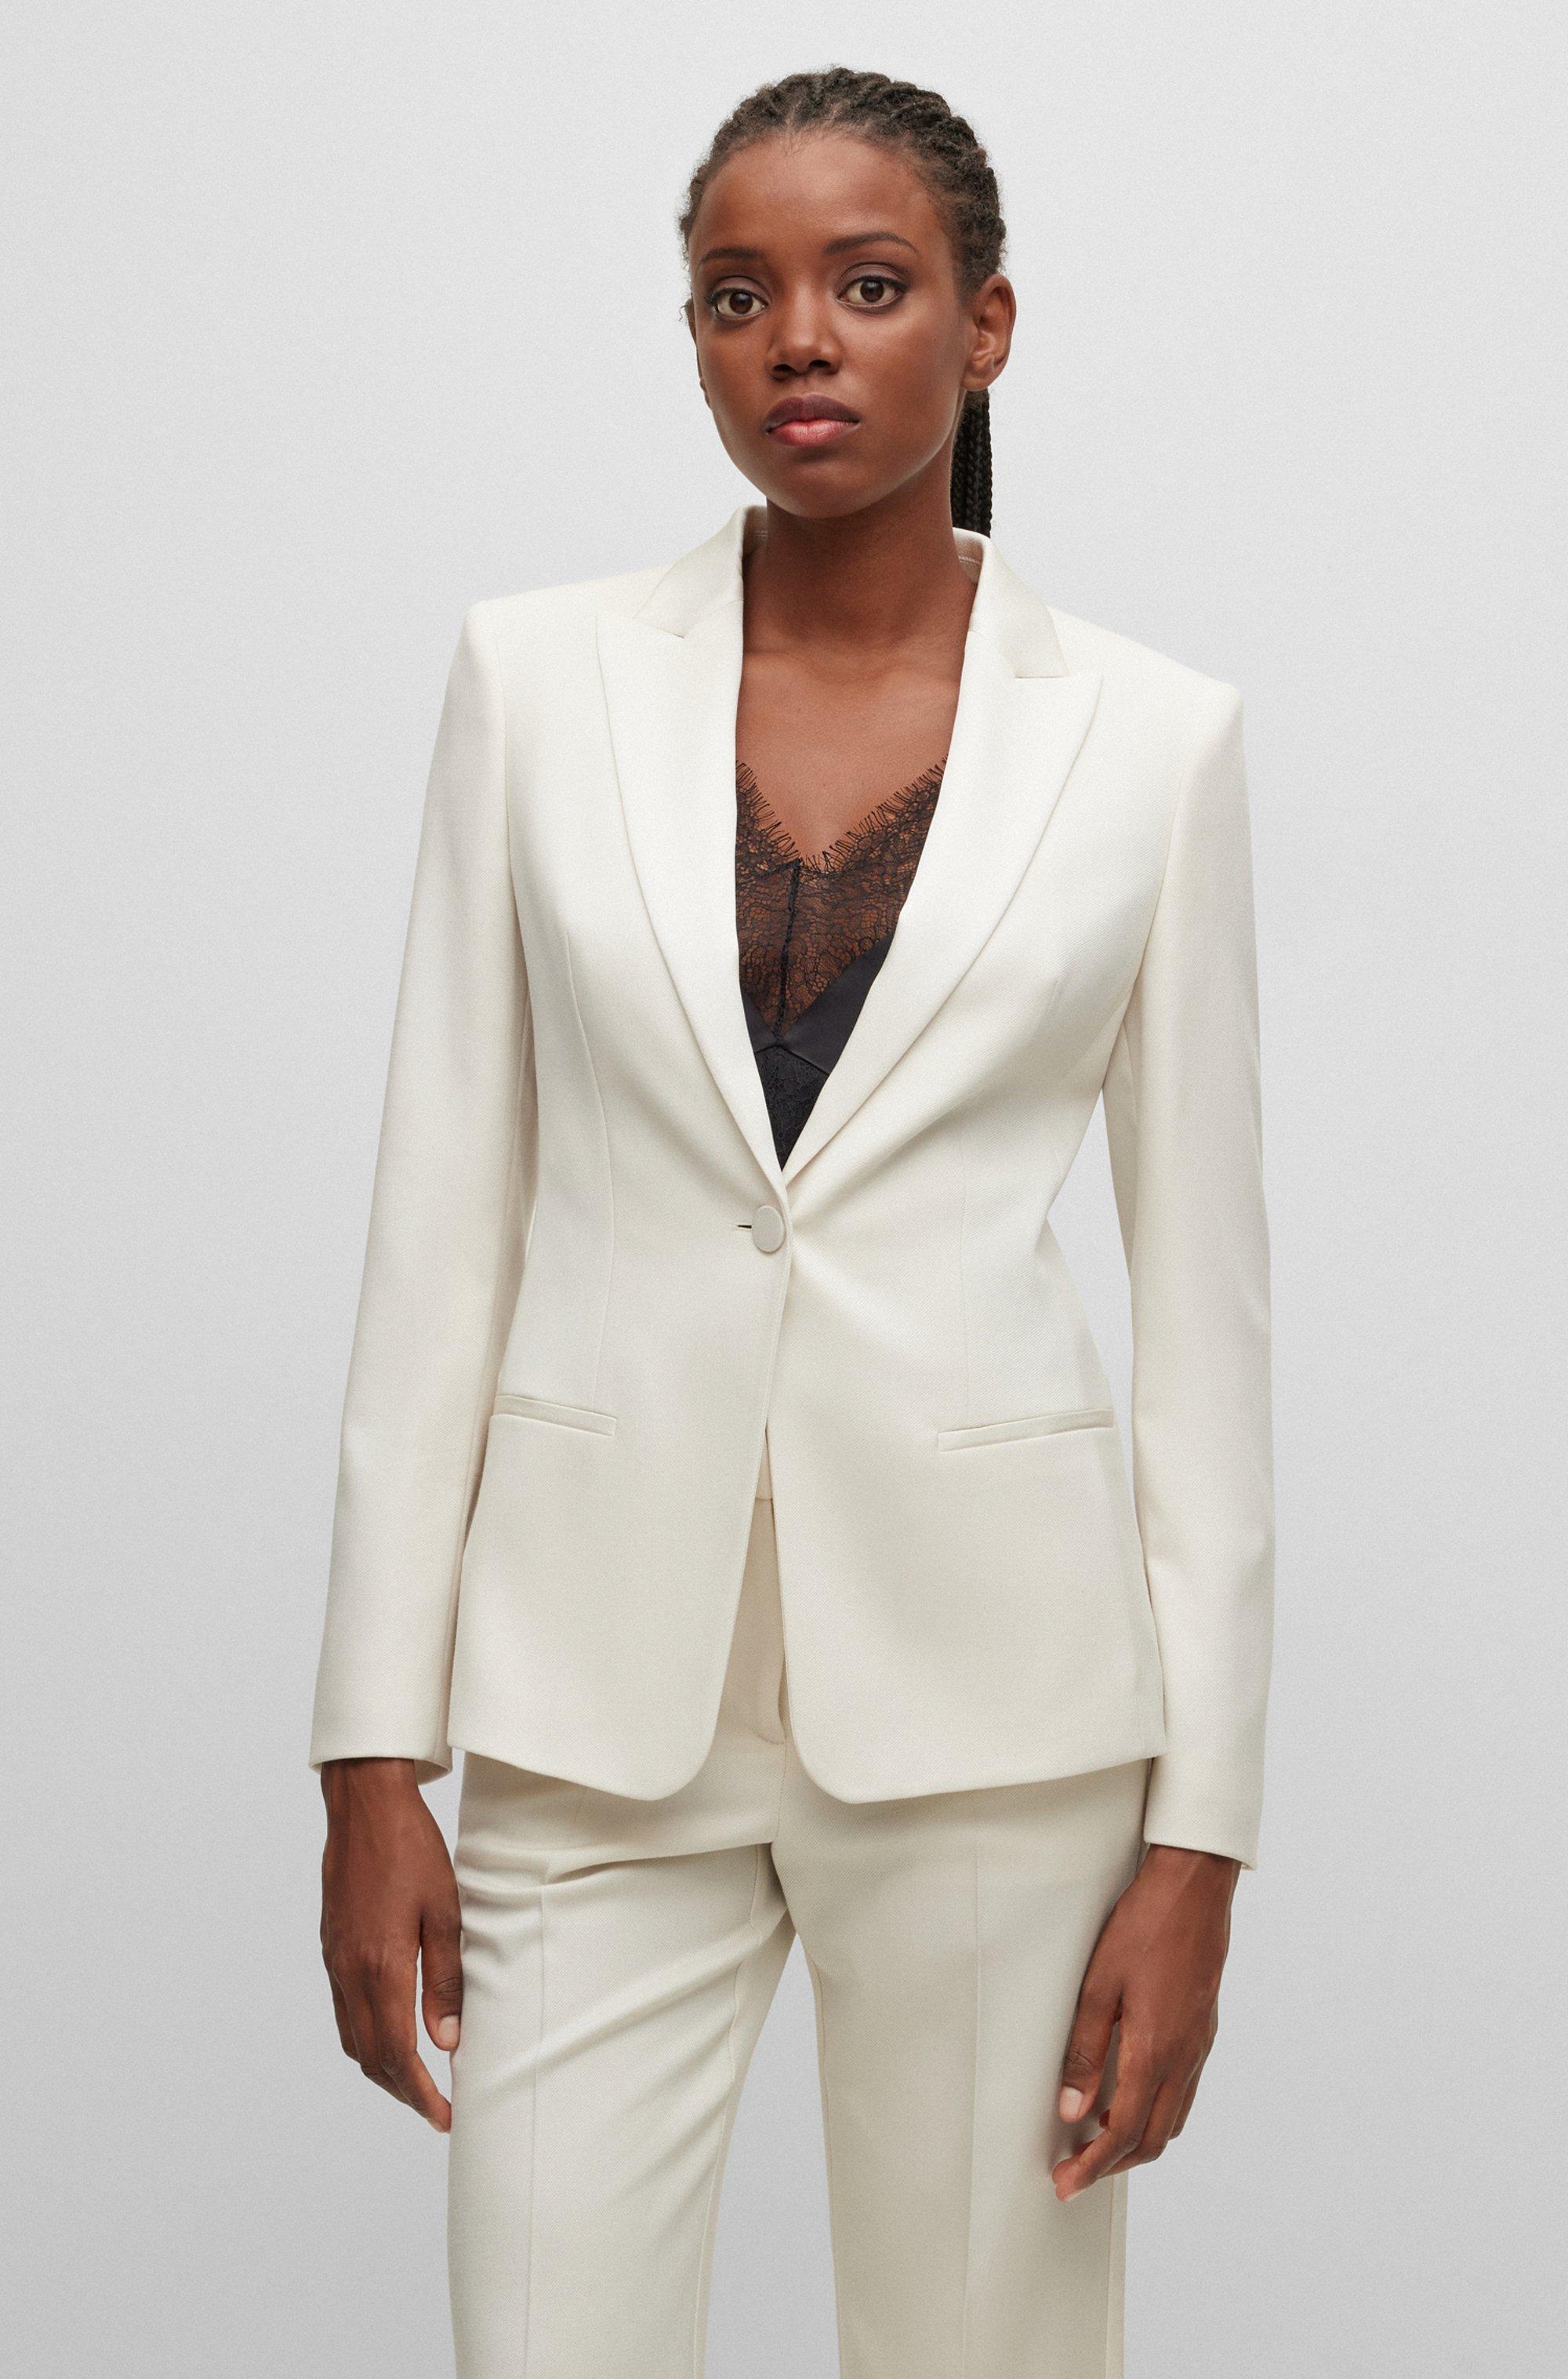 herinneringen verkoper cap BOSS by HUGO BOSS Slim-fit Tuxedo-style Jacket In Wool in White | Lyst